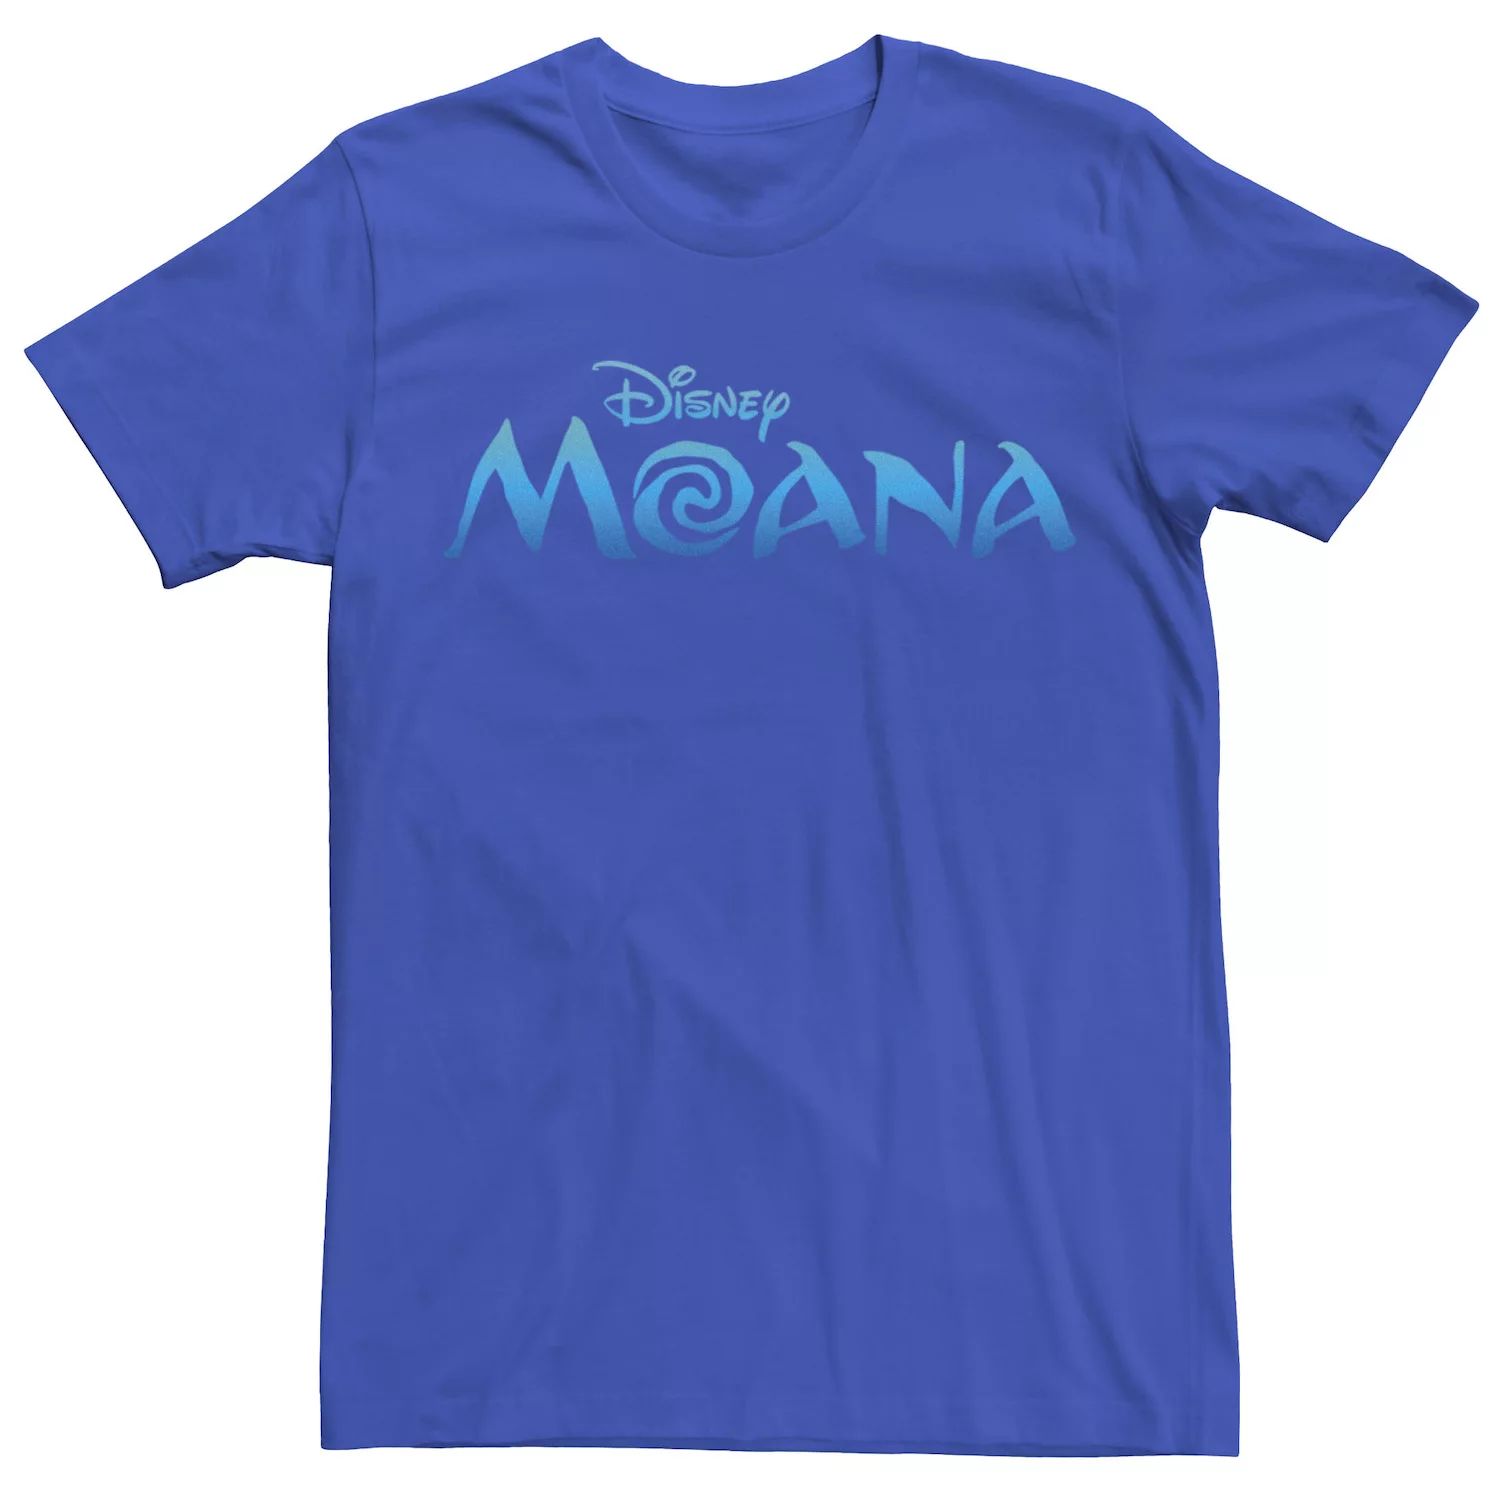 Мужская футболка с официальным логотипом фильма Disney Moana цена и фото